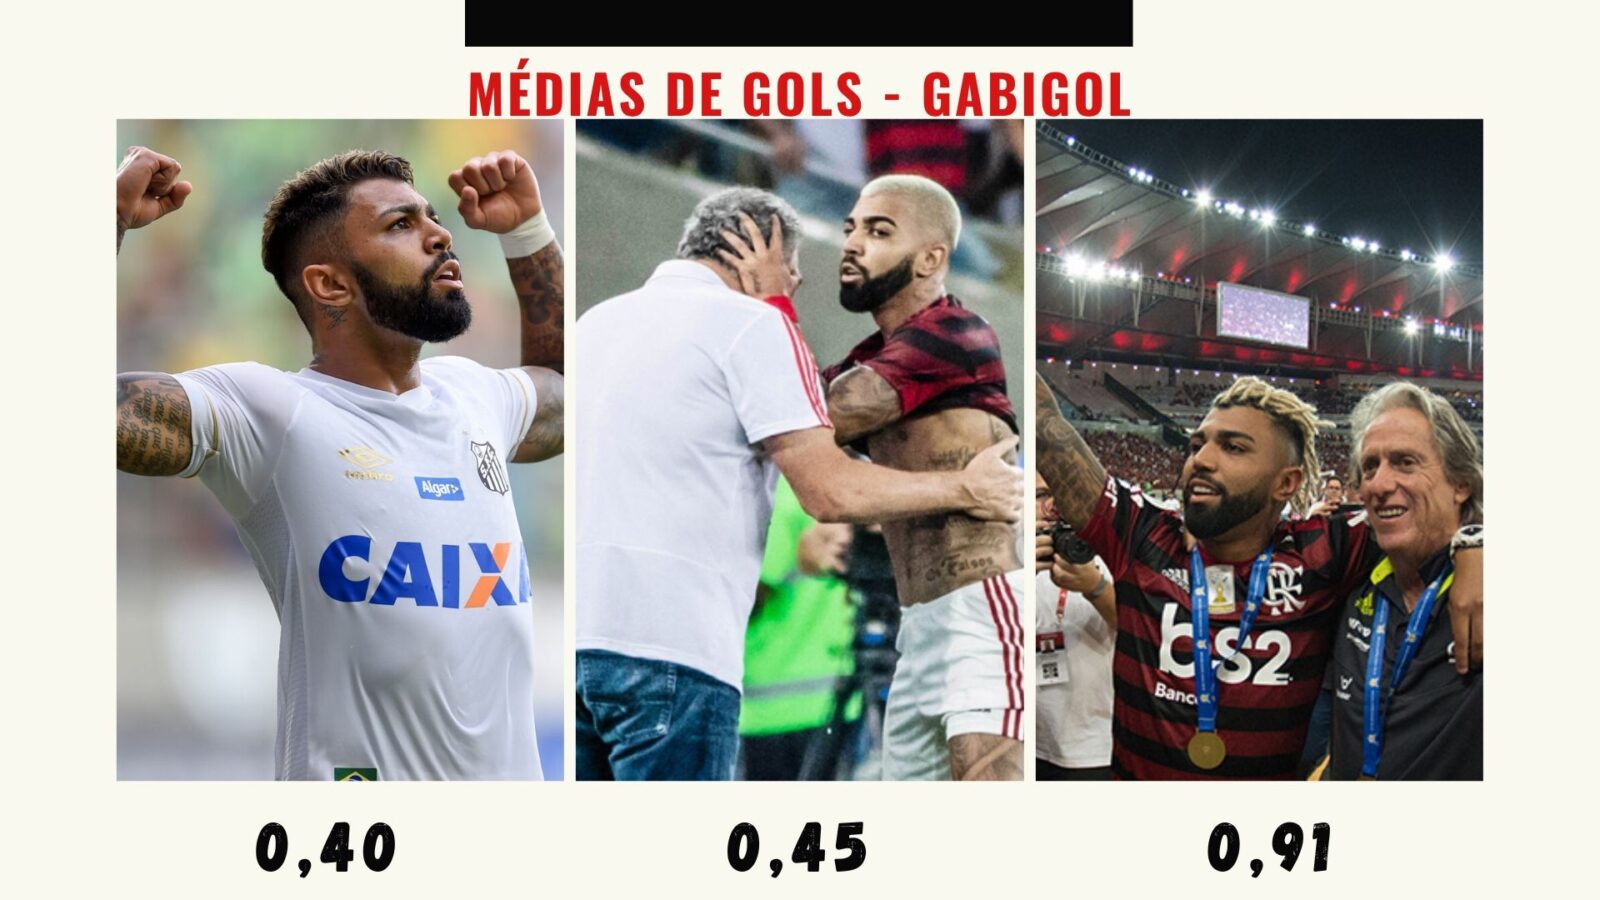 Gabigol Flamengo Média de gols